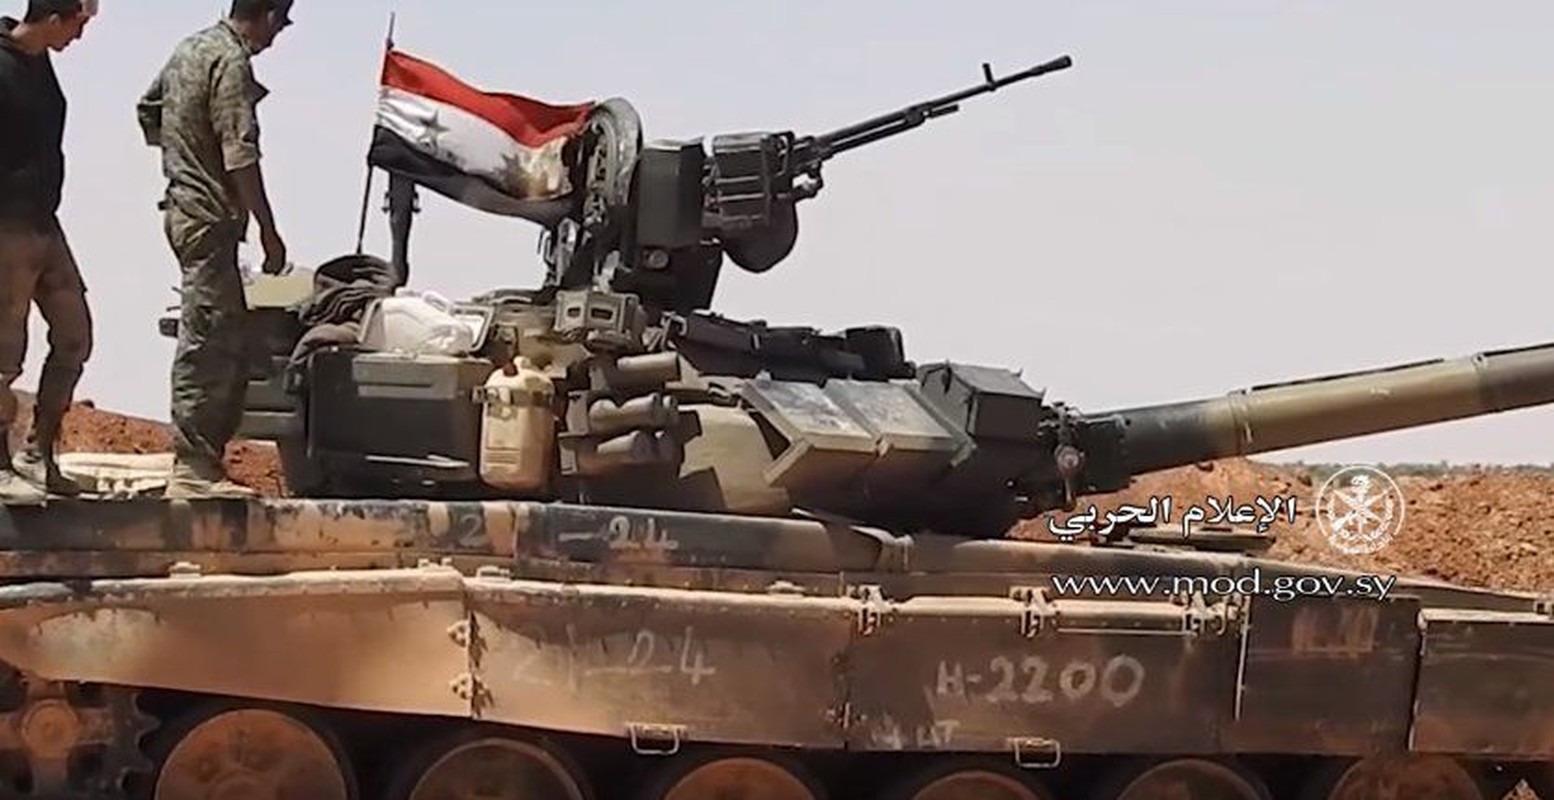 Bao nhieu xe tang T-90 da bi nghien nat o chien truong Syria?